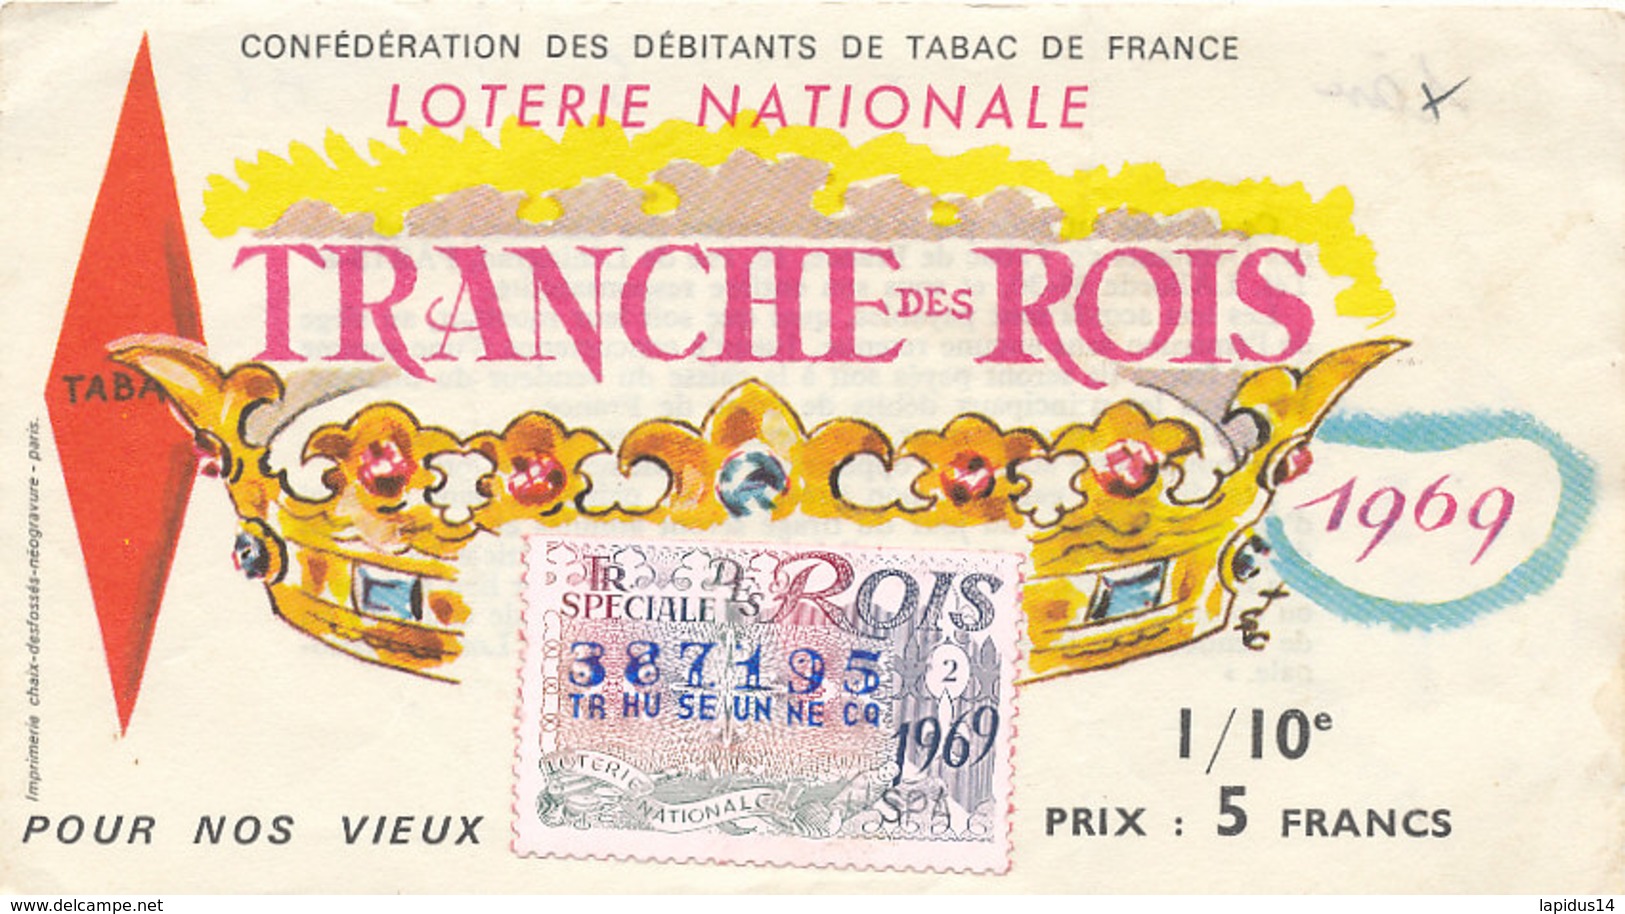 BL 38 / BILLET  LOTERIE NATIONALE  TRANCHE   DES ROIS   1969 - Billets De Loterie